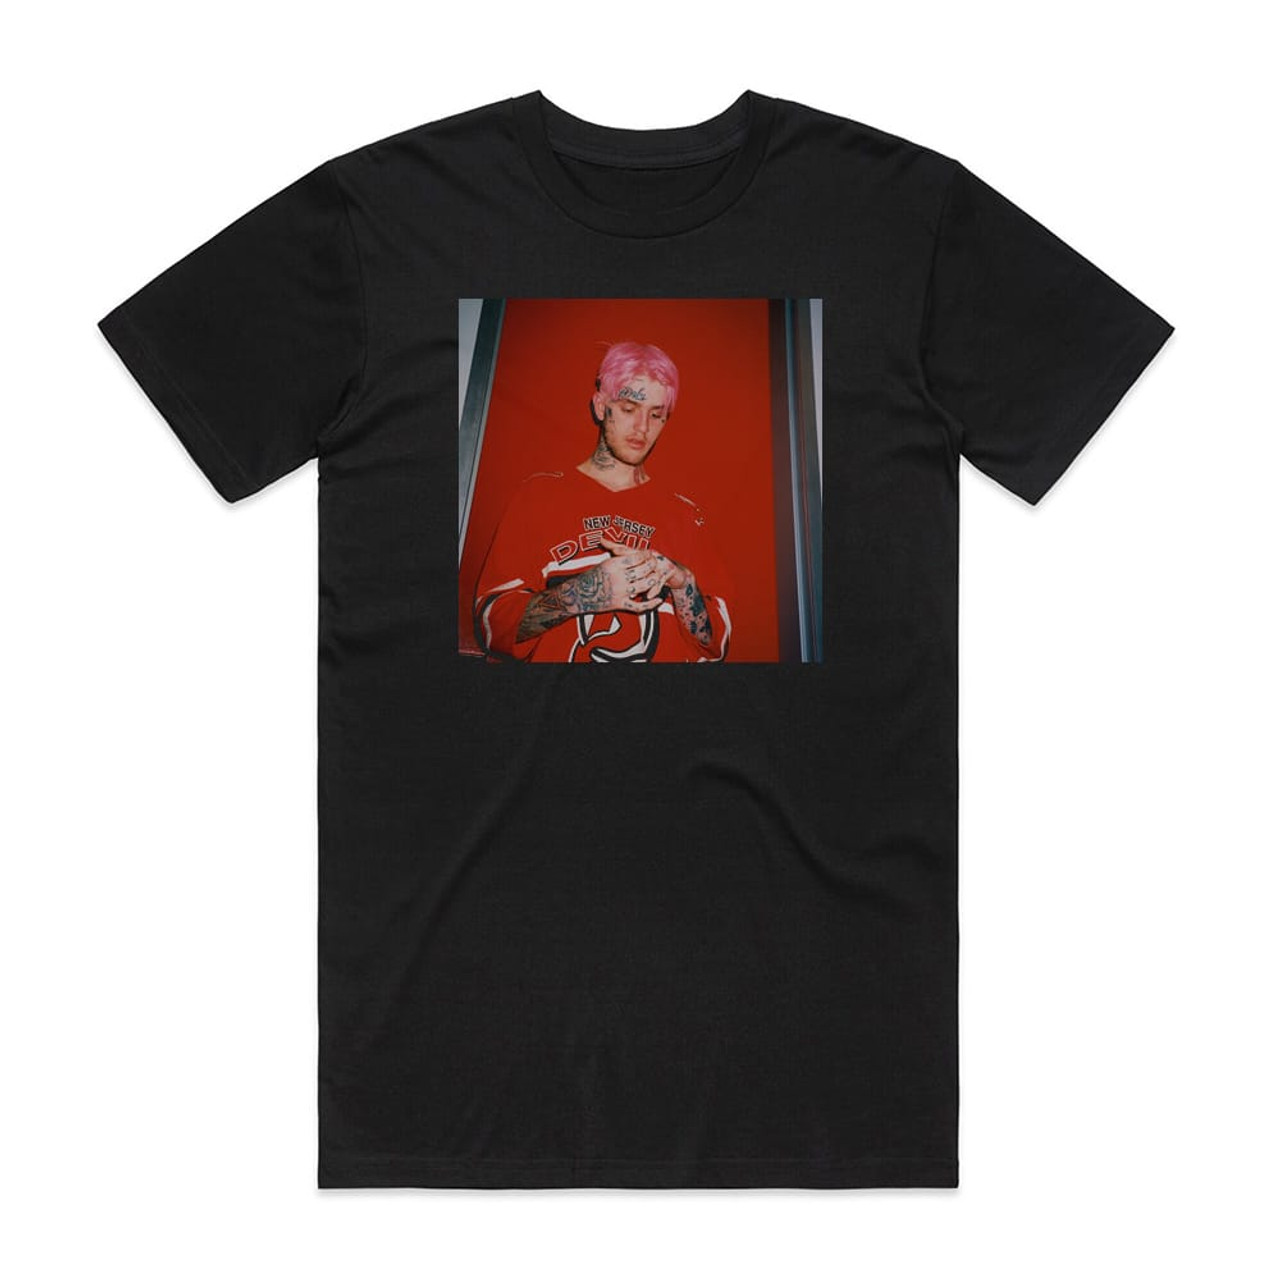 LiL PEEP Hellboy Album Cover T-Shirt Black